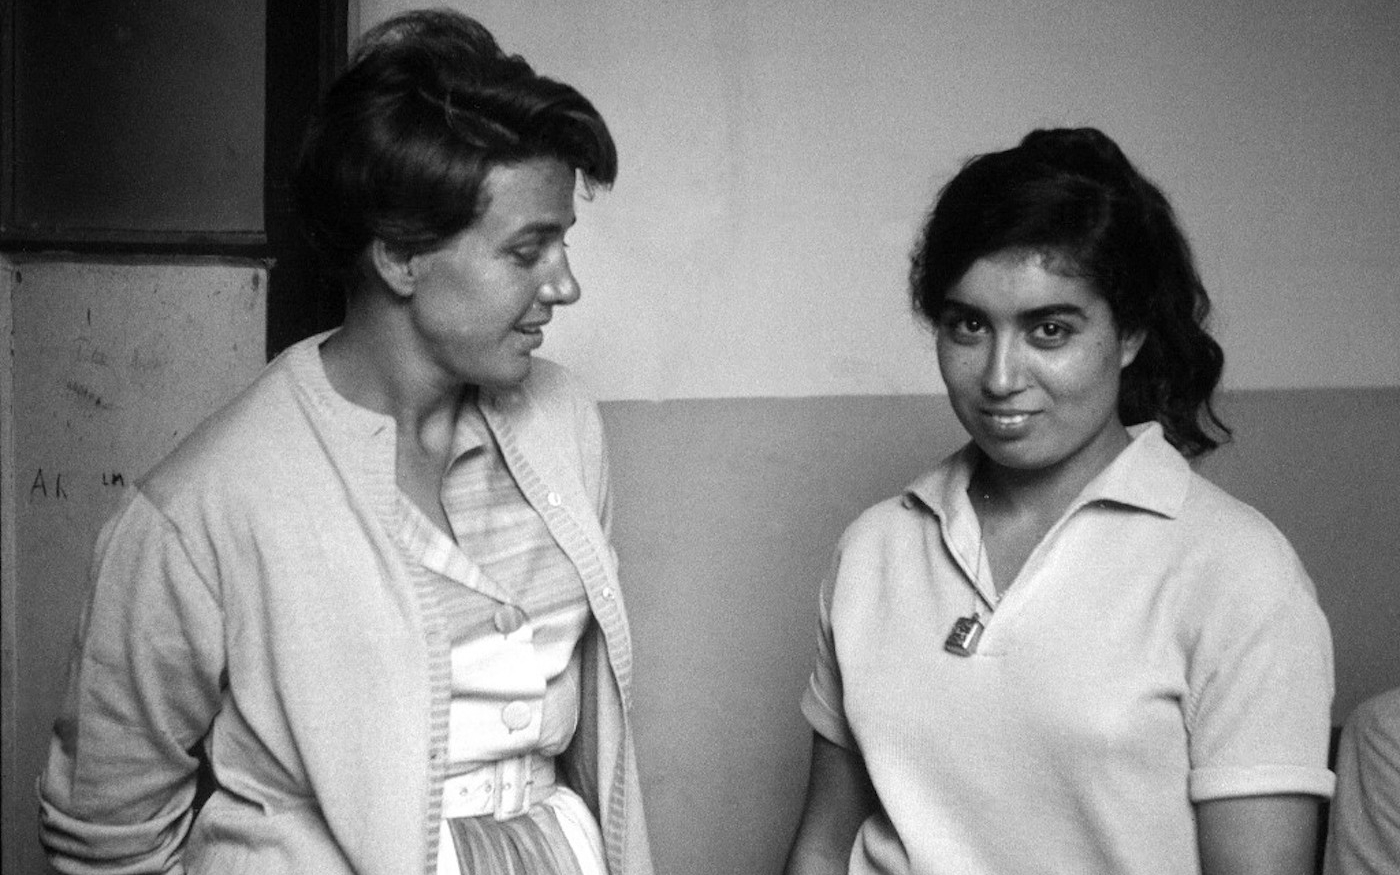 Photo datée du 22 avril 1962 de la jeune combattante indépendantiste algérienne Djamila Boupacha en compagnie de son avocate Gisèle Halimi à sa sortie de la maison centrale de Rennes. Accusée d’avoir déposé une bombe à la Brasserie des facultés à Alger, elle avait été arrêtée en 1960 pendant la guerre d’Algérie et affirmait avoir été torturée après son arrestation (AFP)